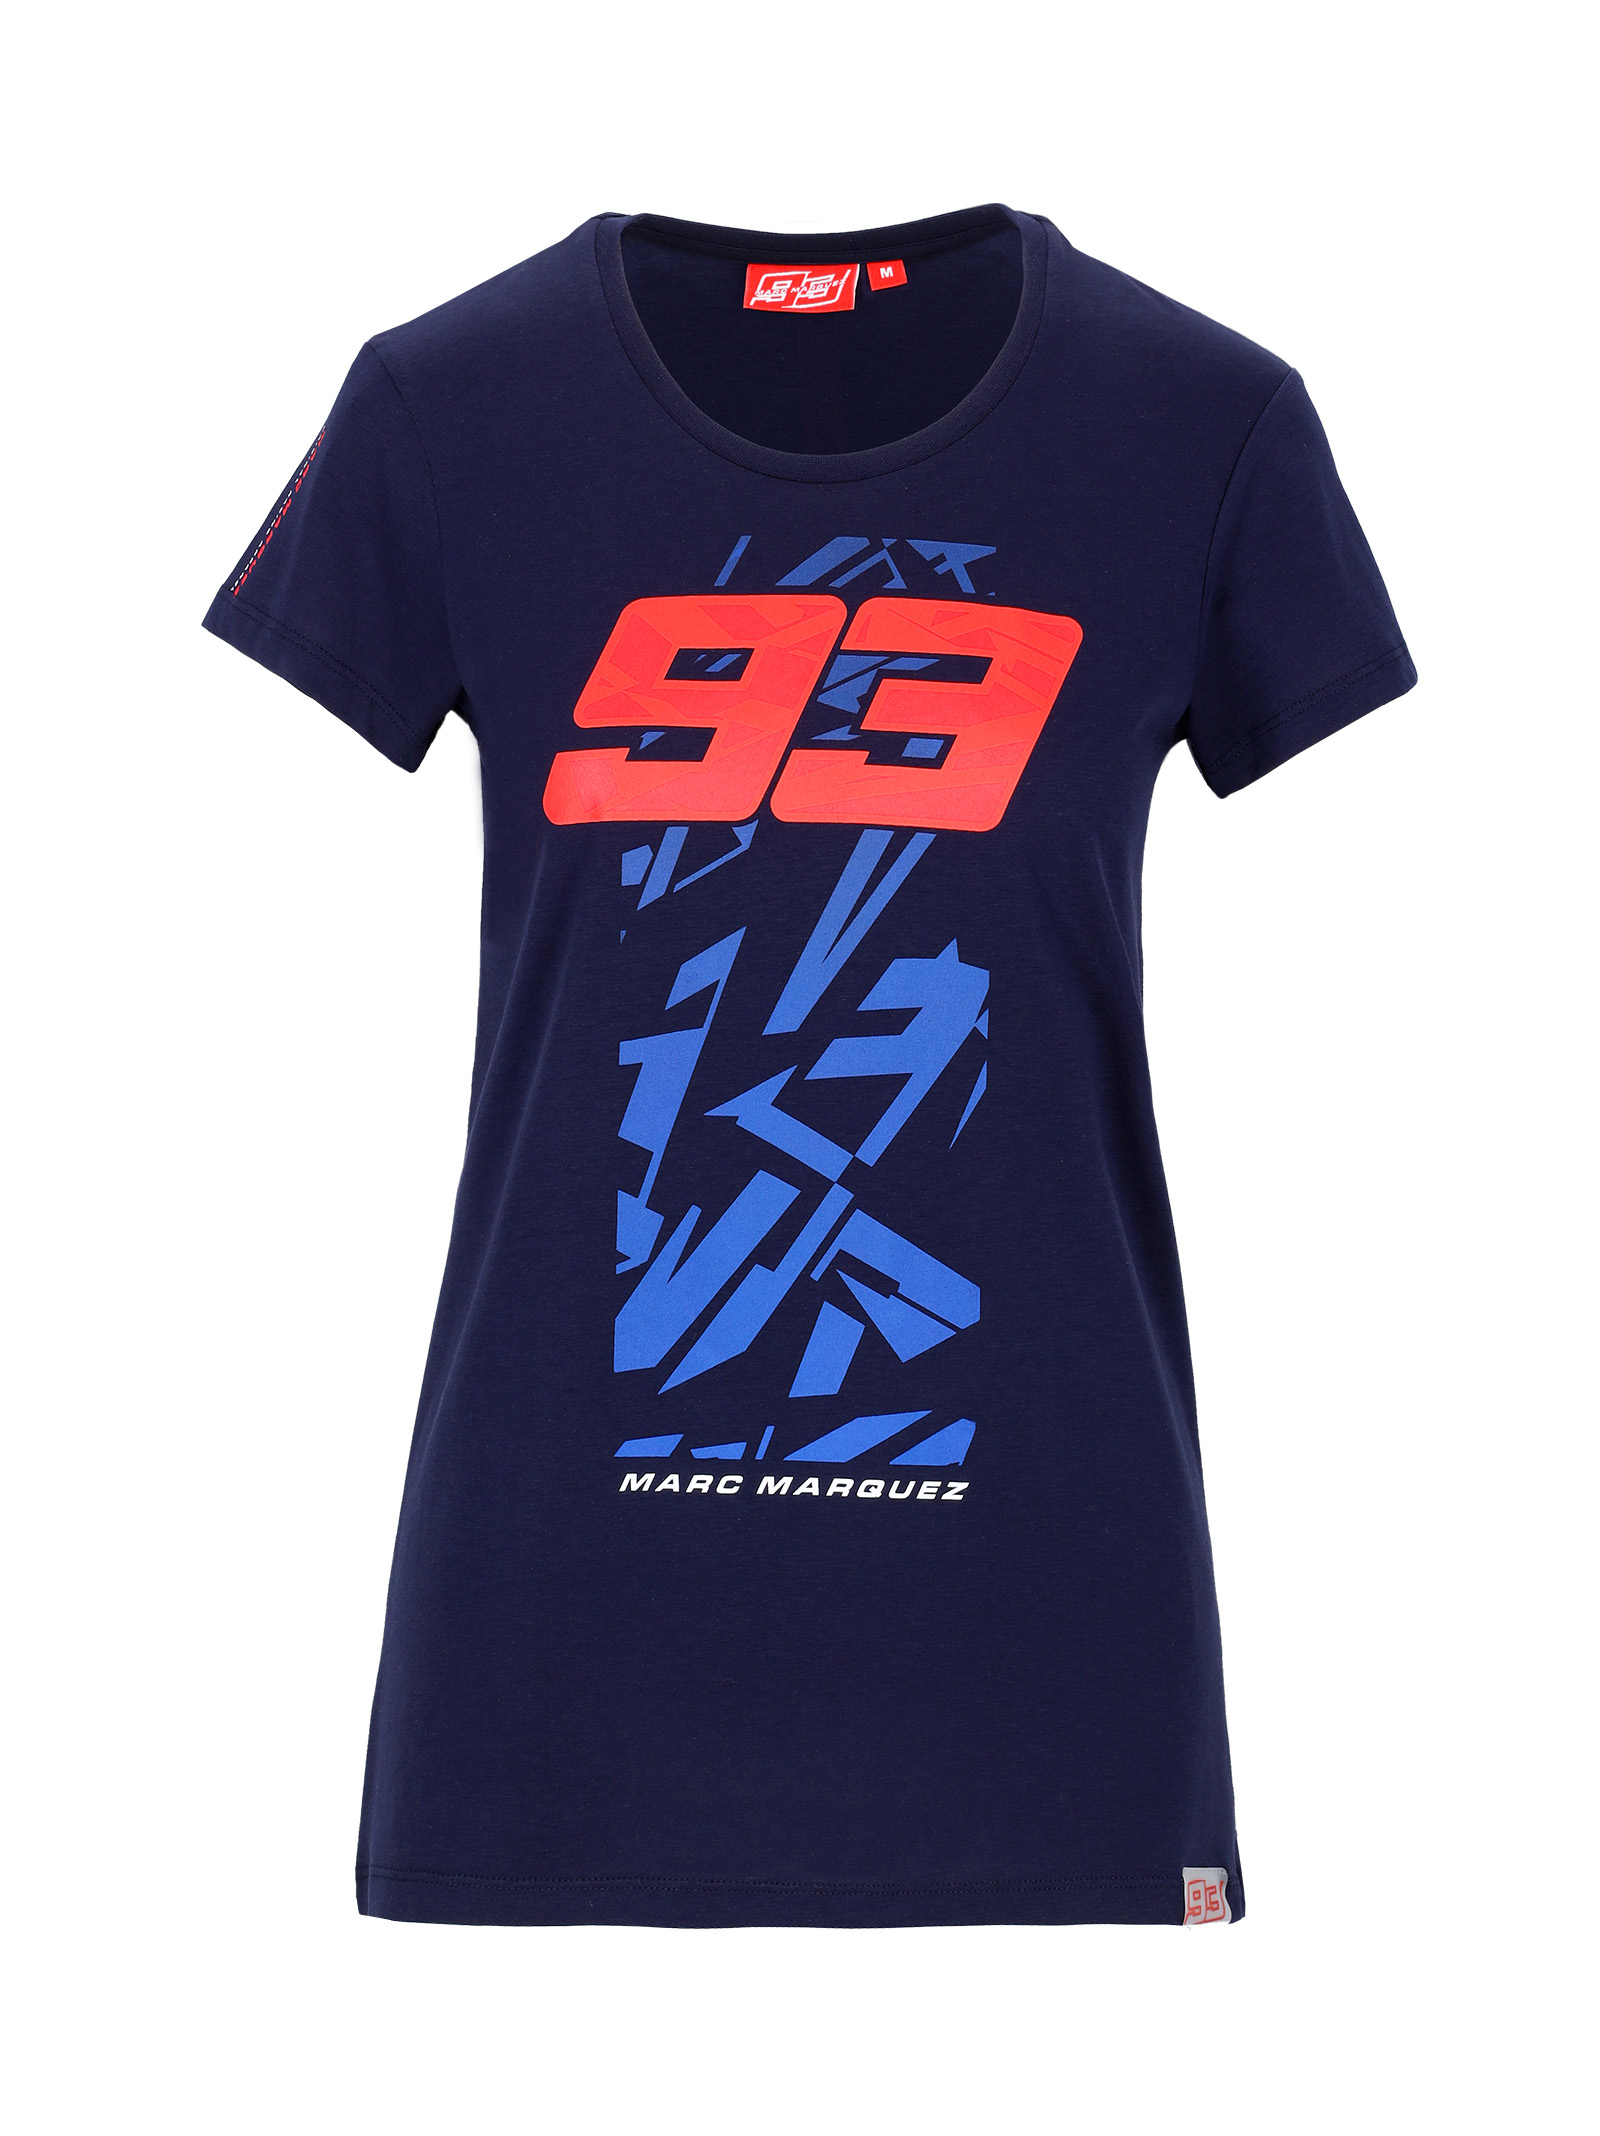 T-shirt femme MARC MARQUEZ 93 bleu marine vue devant